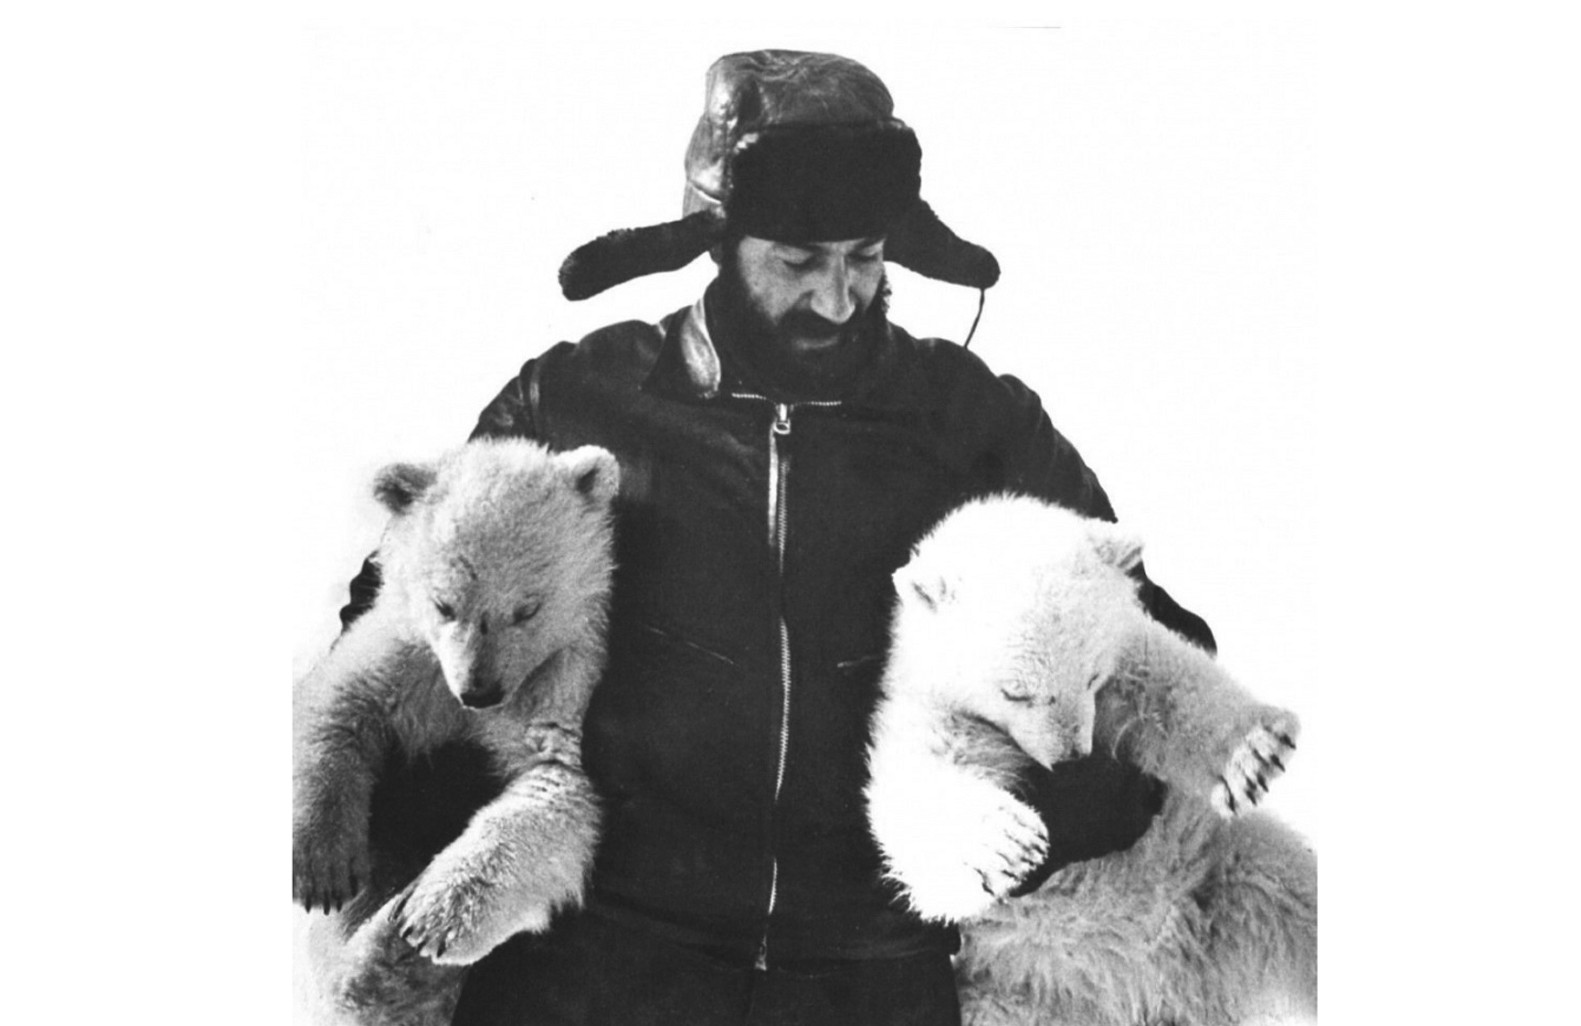 Артур Чилингаров с медвежатами Филькой и Машкой. Фото из личного архива Артура Чилингарова